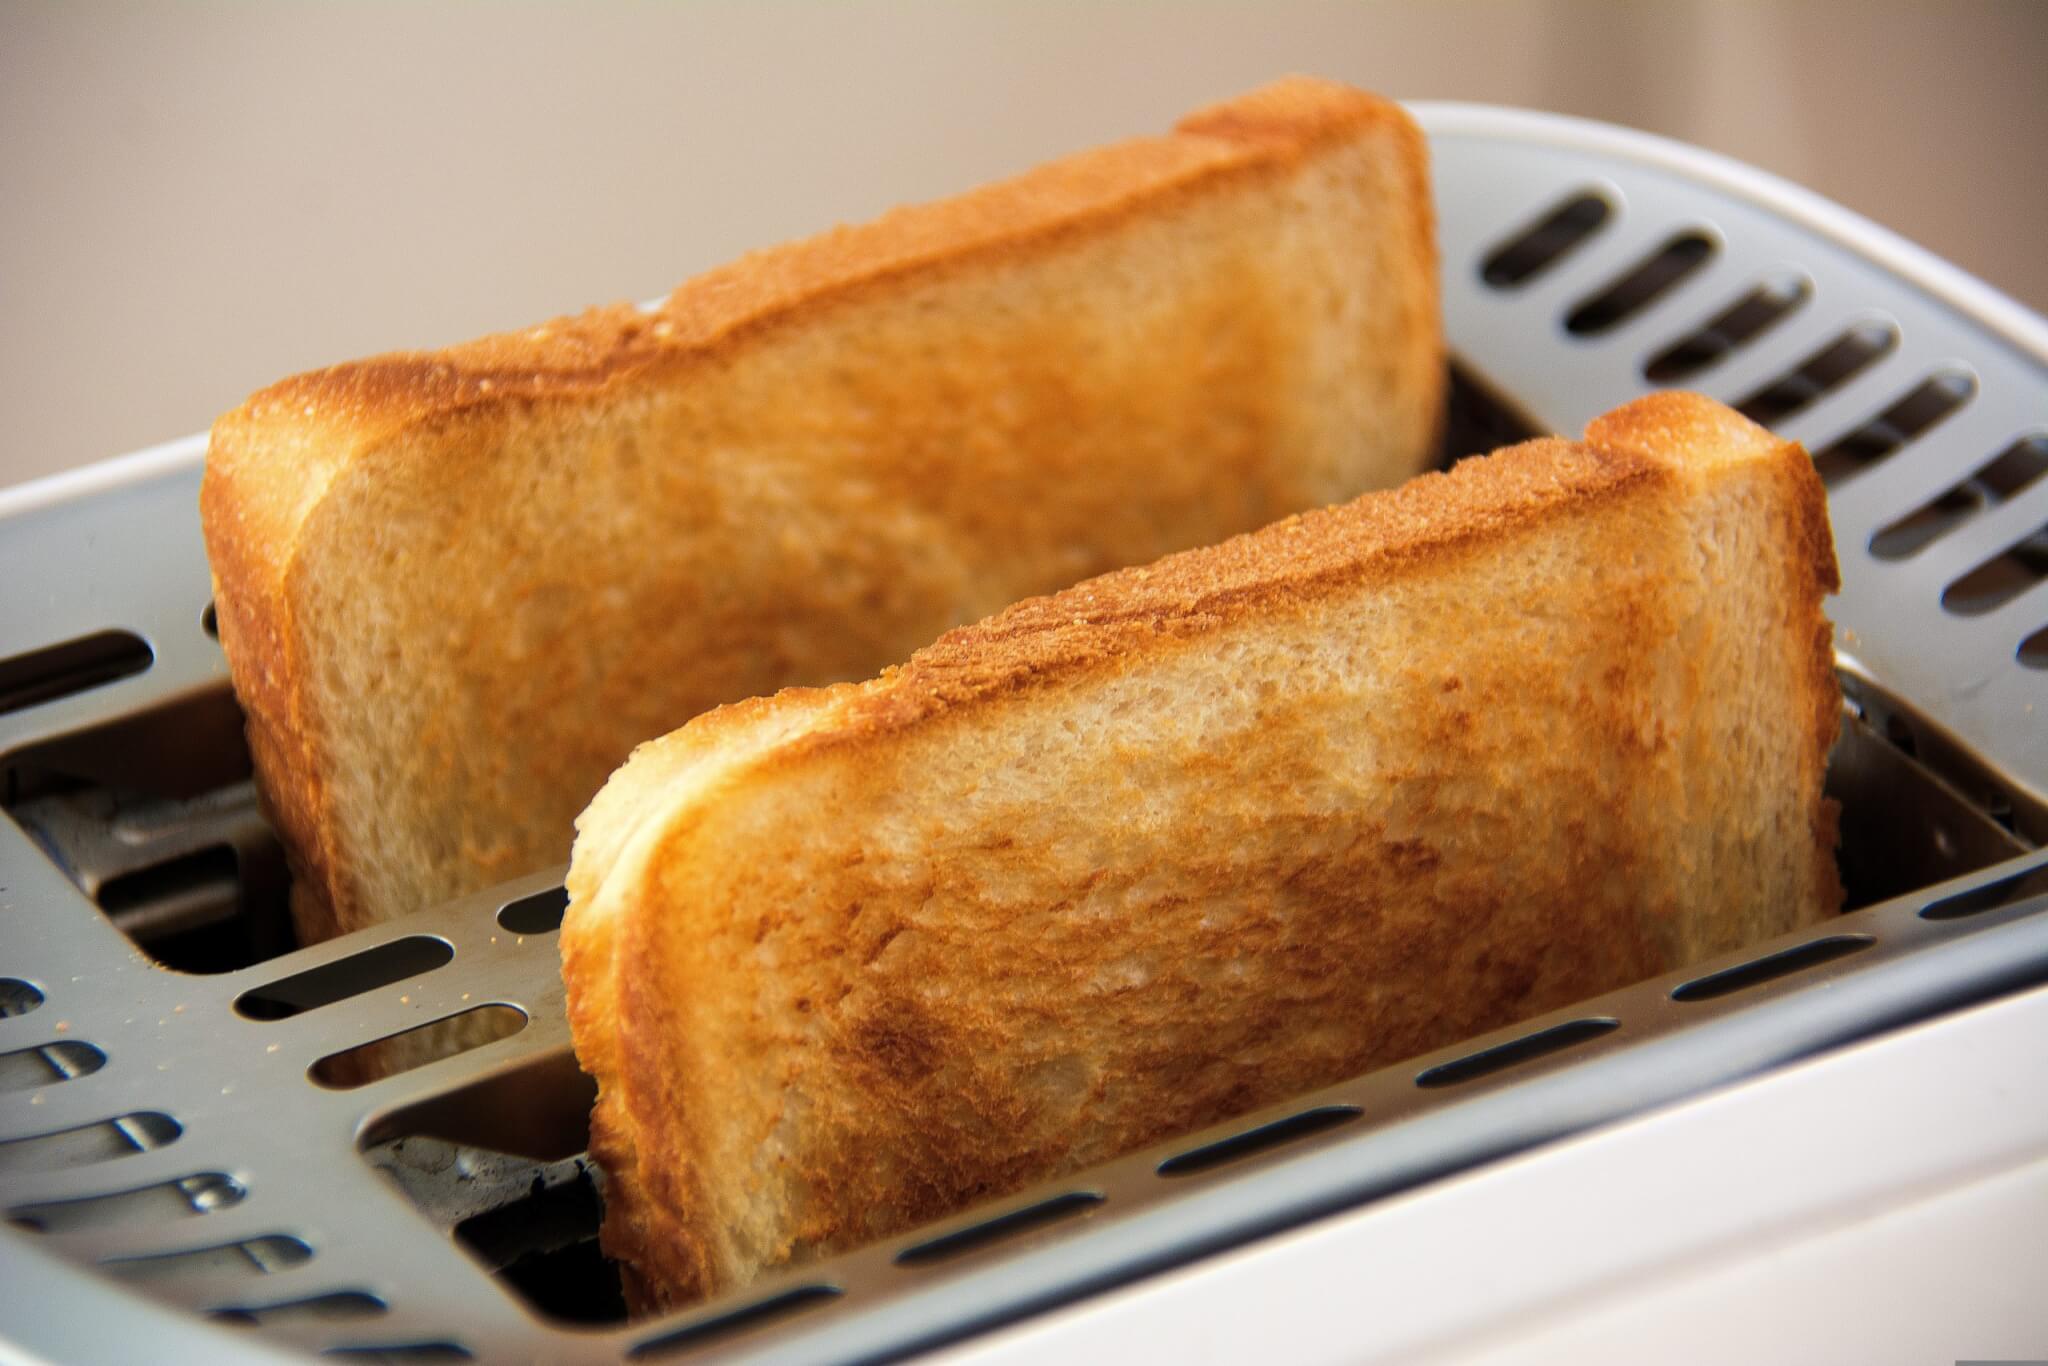 Mejores tostadoras: las 5 marcas más recomendadas por expertos - Study Finds